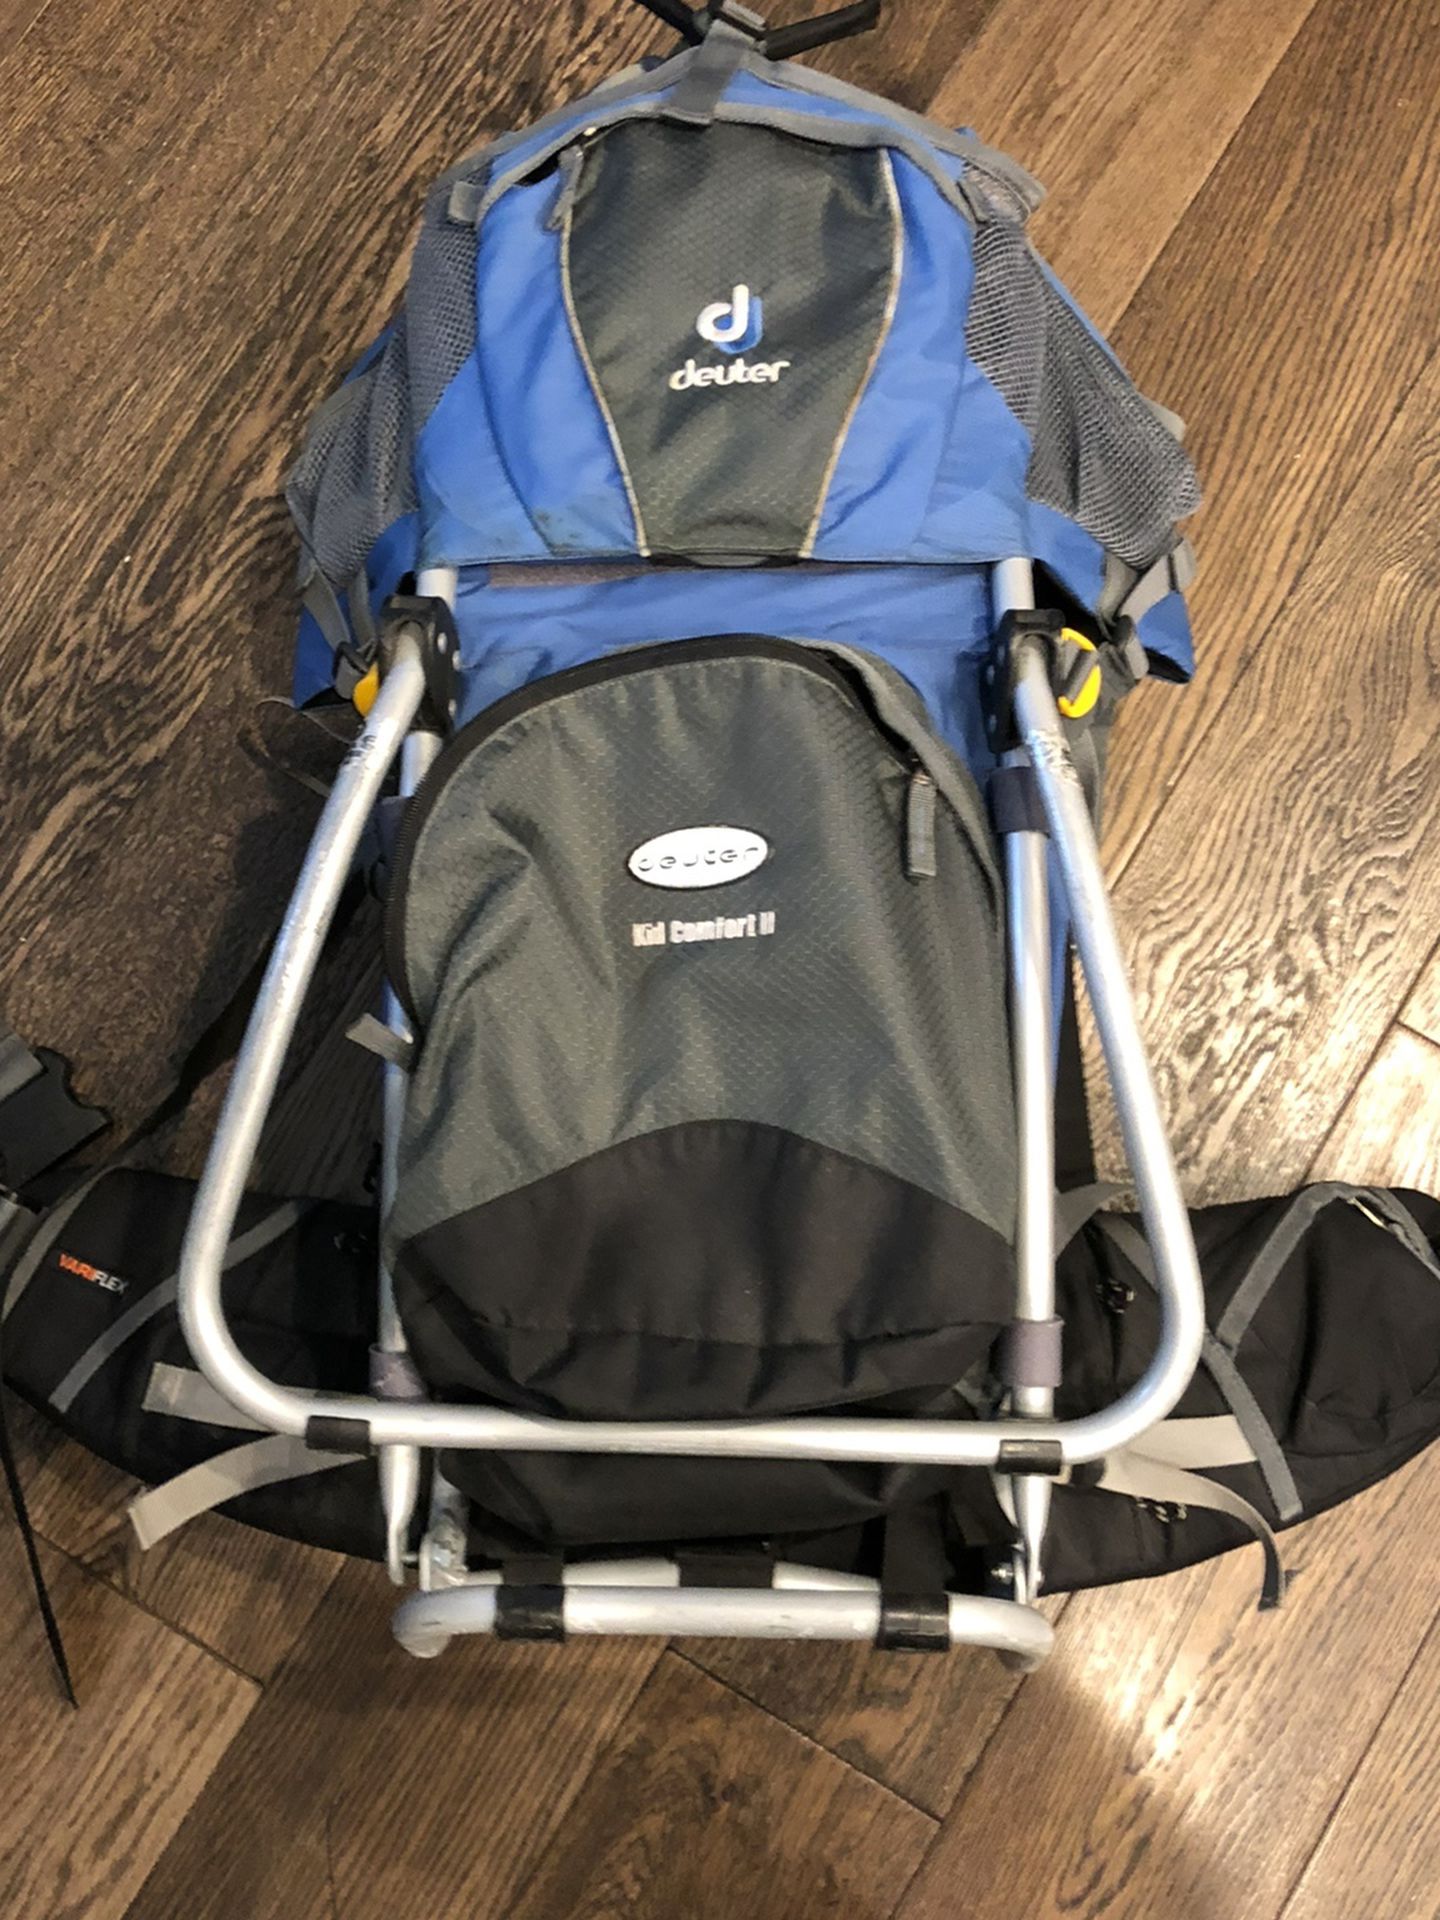 Deuter Kid Comfort 2 Child Carrier Backpack